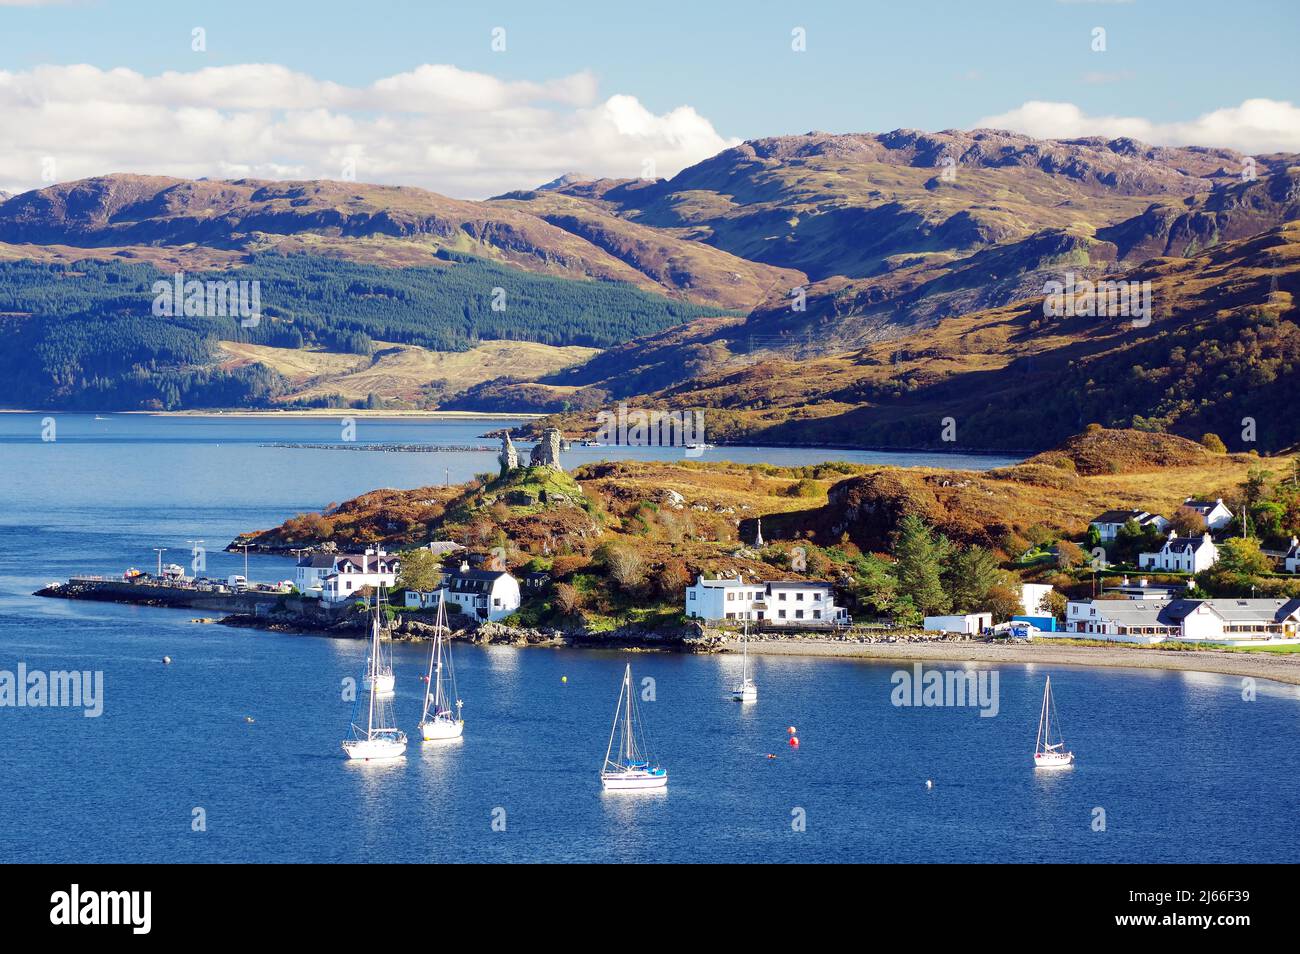 Bucht mit Segelbooten und dem kleinen Ort Kyle of Lochalsh, Herbst, Isle of Skye, Hebriden, Schottland, GROSSBRITANNIEN Banque D'Images